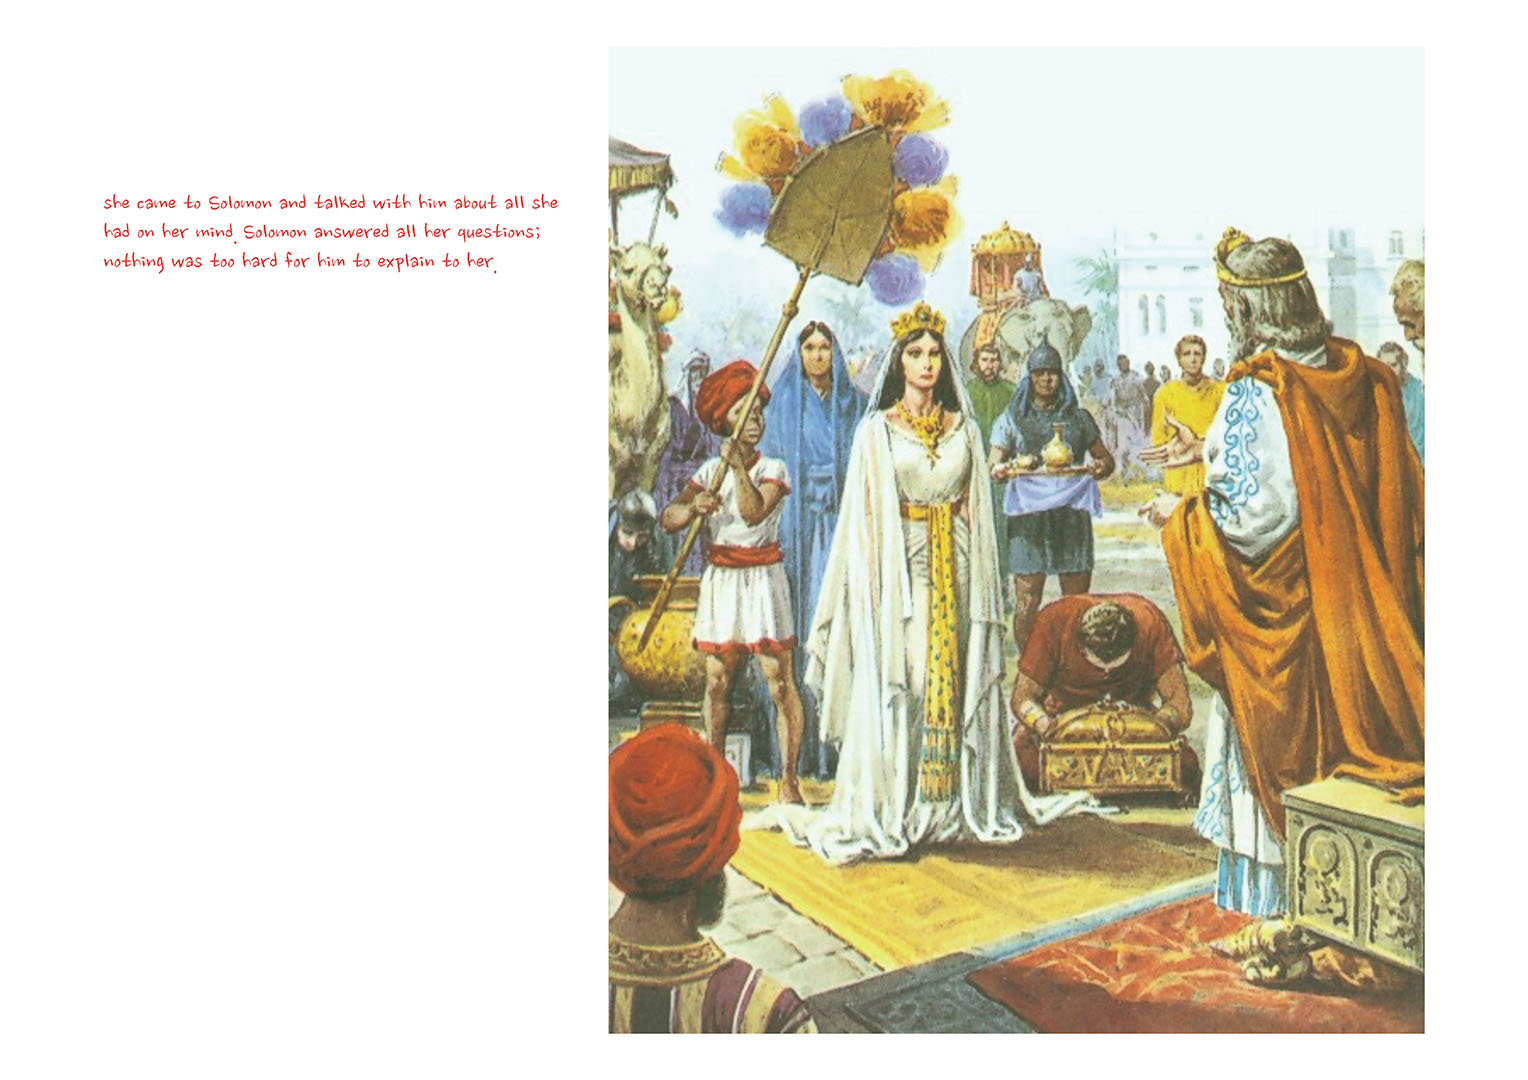 Chapter 16 - Lesson 51 - King Solomon Built Temple